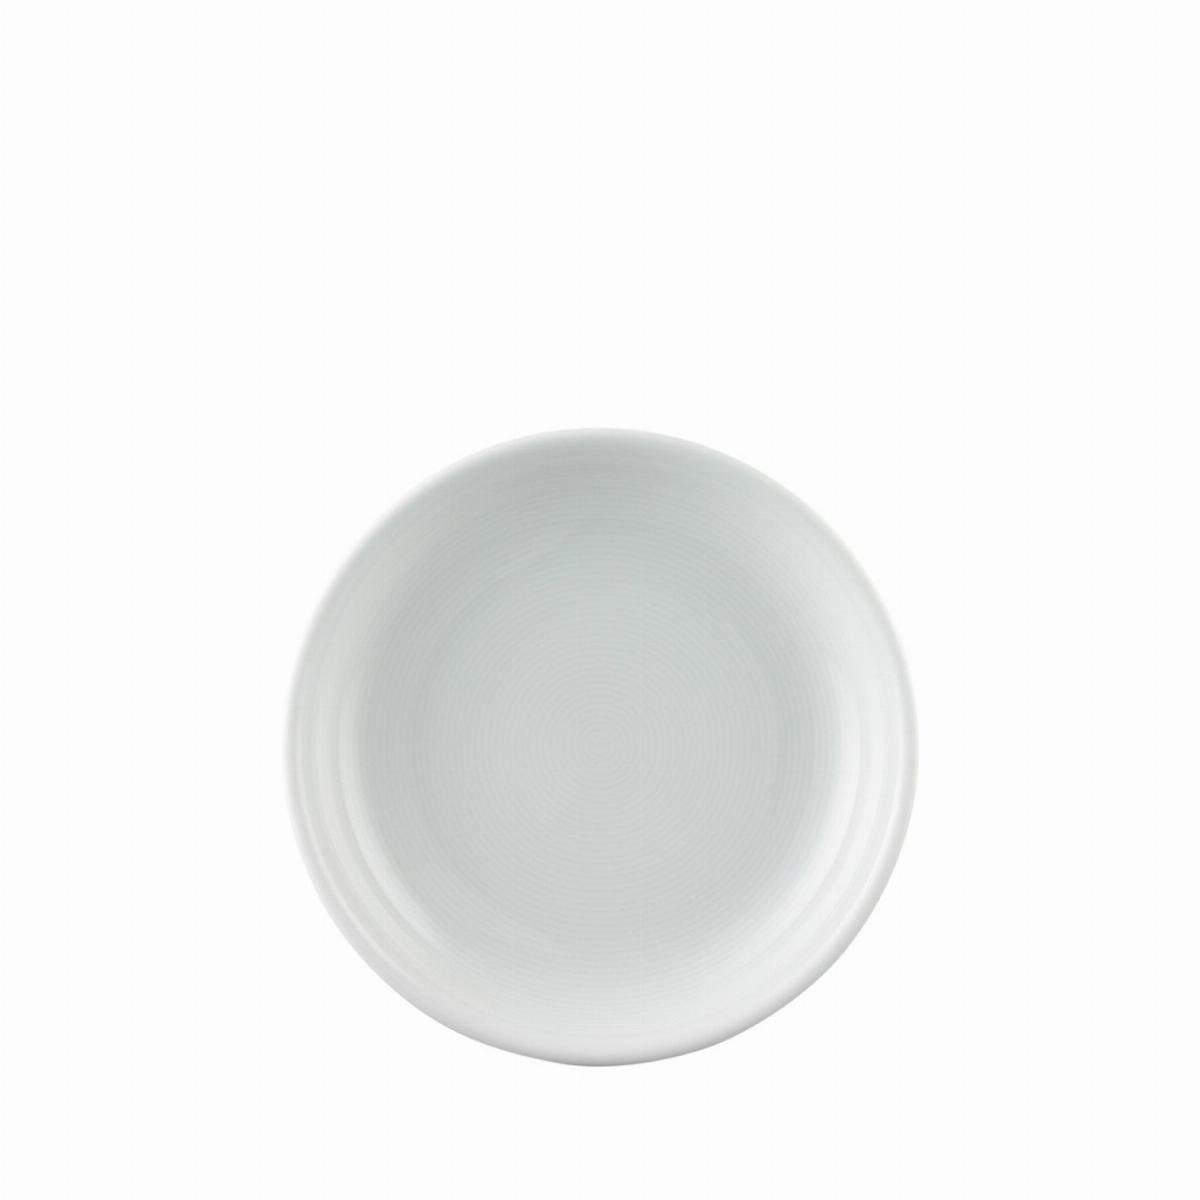 Thomas Porzellan Teller Salatteller 19 cm tief - TREND Weiß - 2 Stück